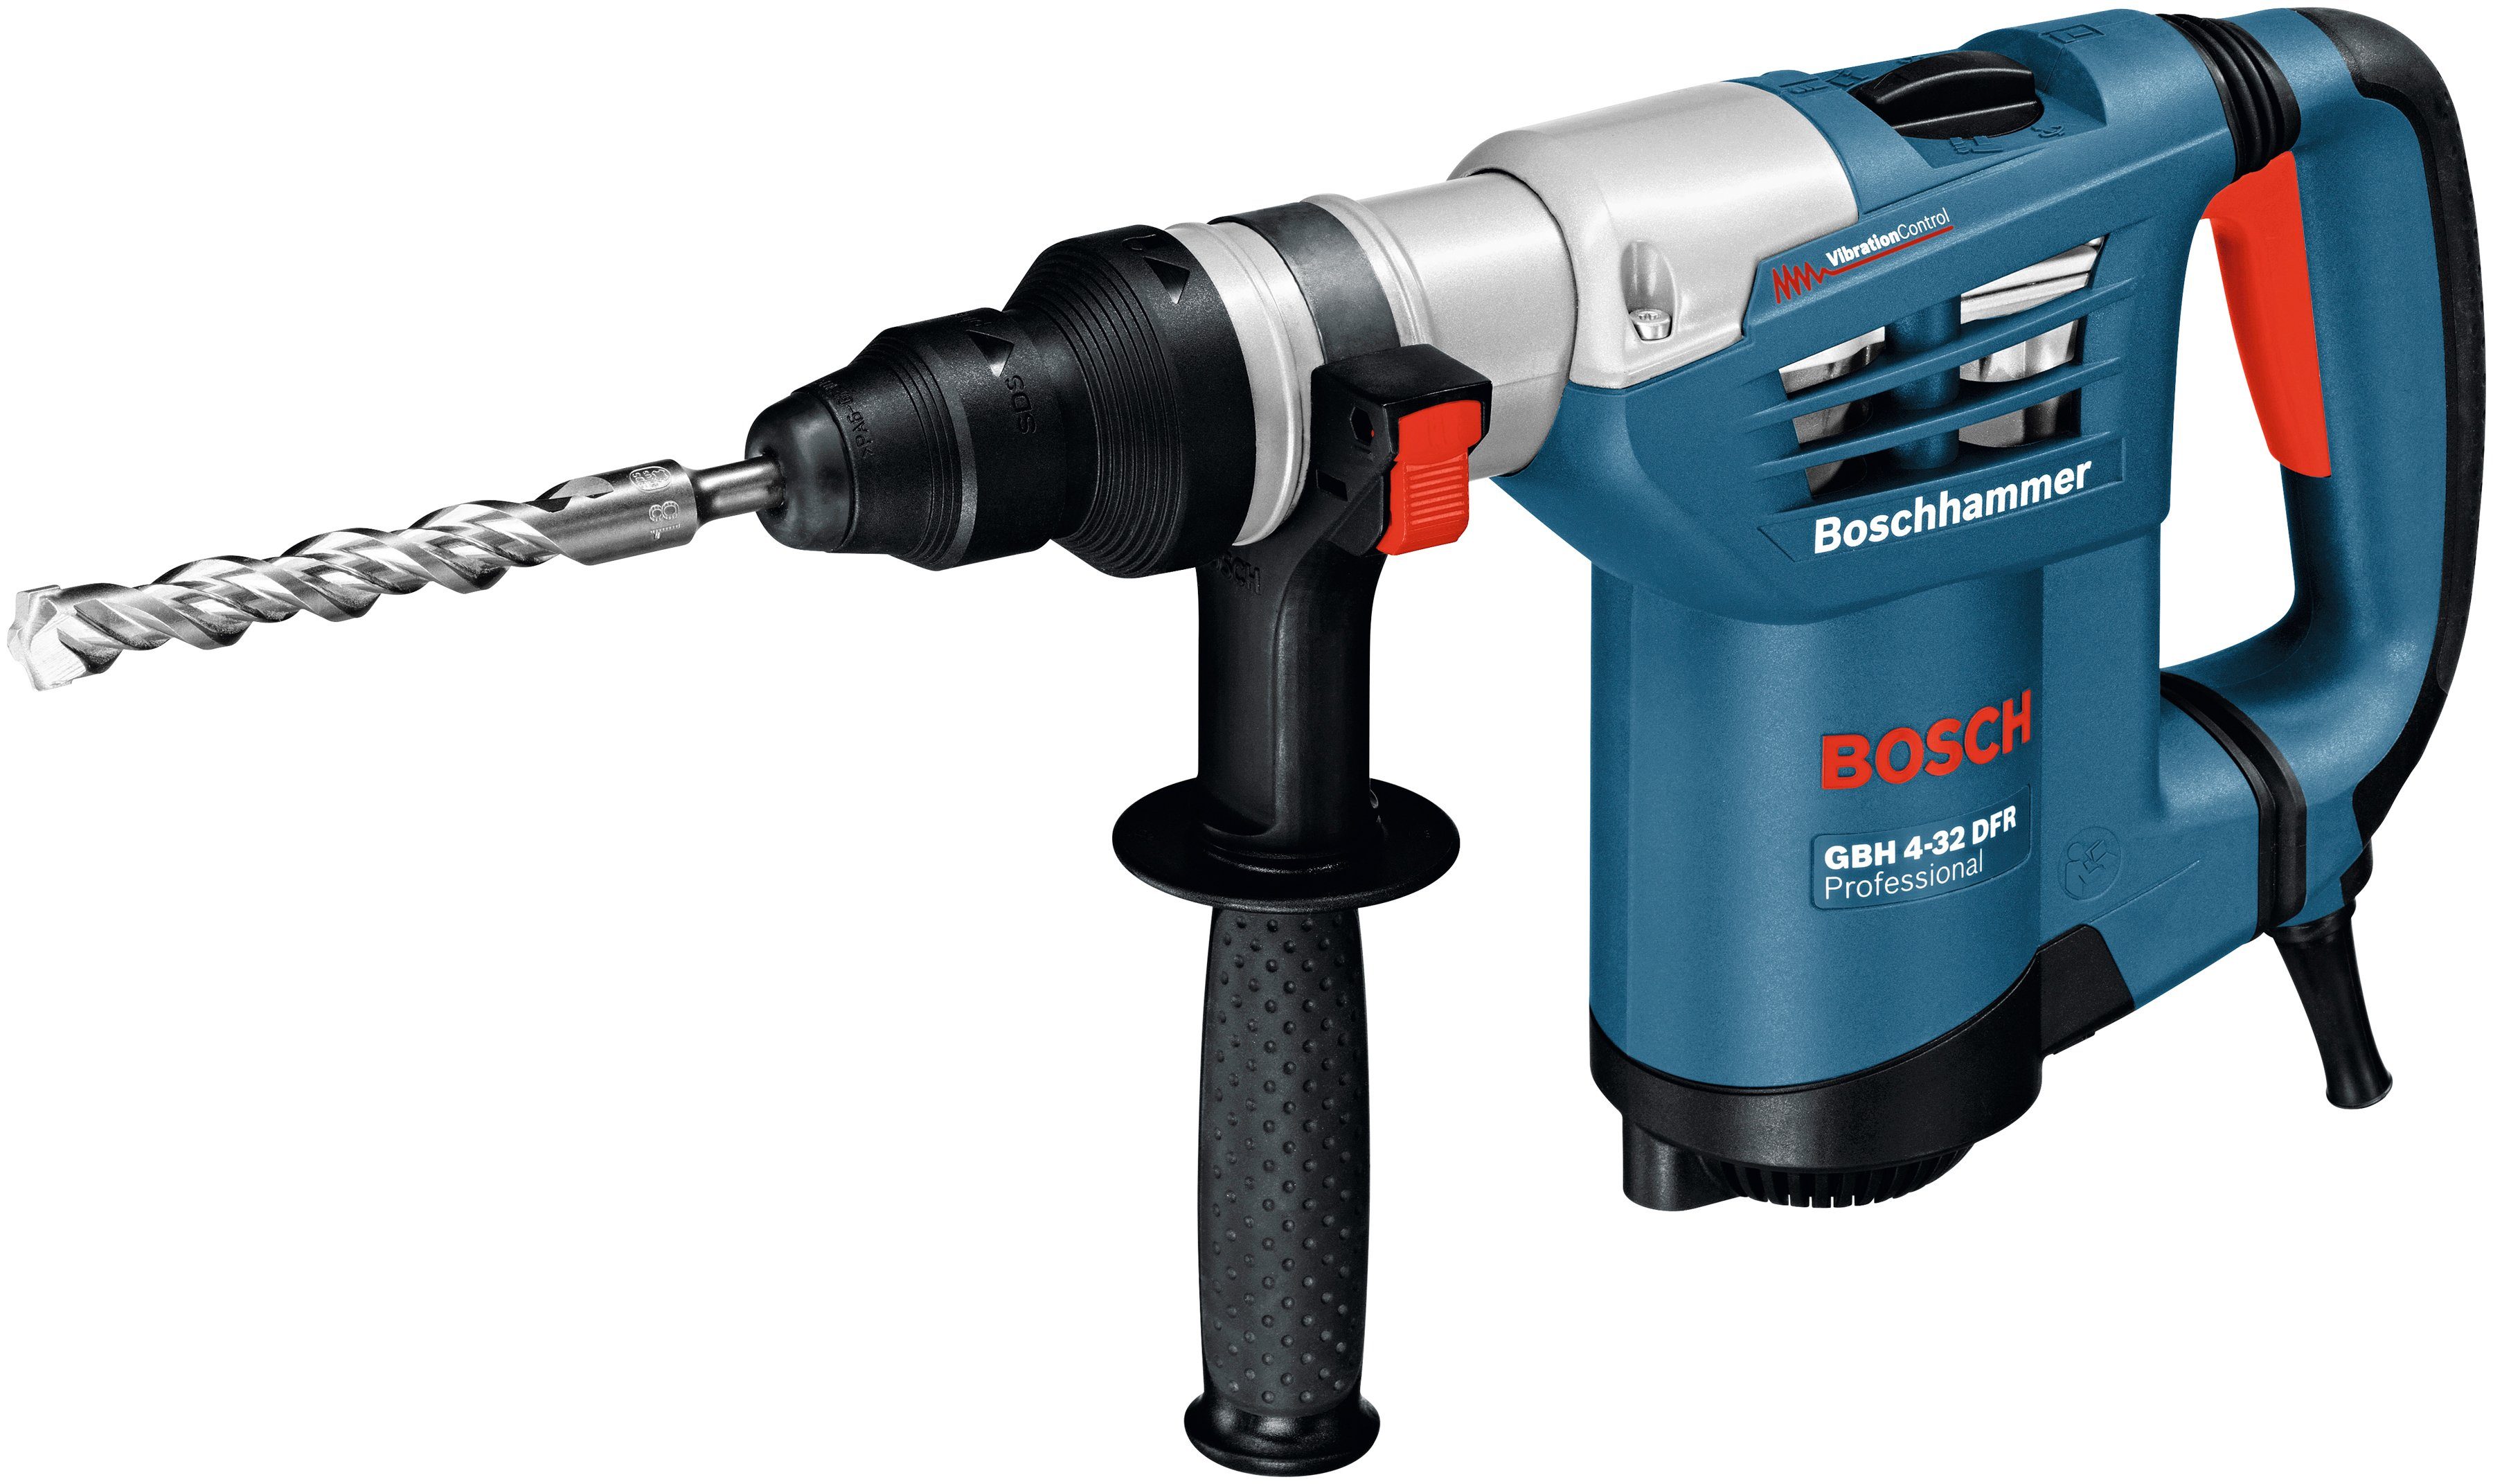 Bohrhammer U/min, Bosch Schnellspannbohrfutter, GBH 4-32 mit Handwerkkoffer DFR, Professional max. 3600